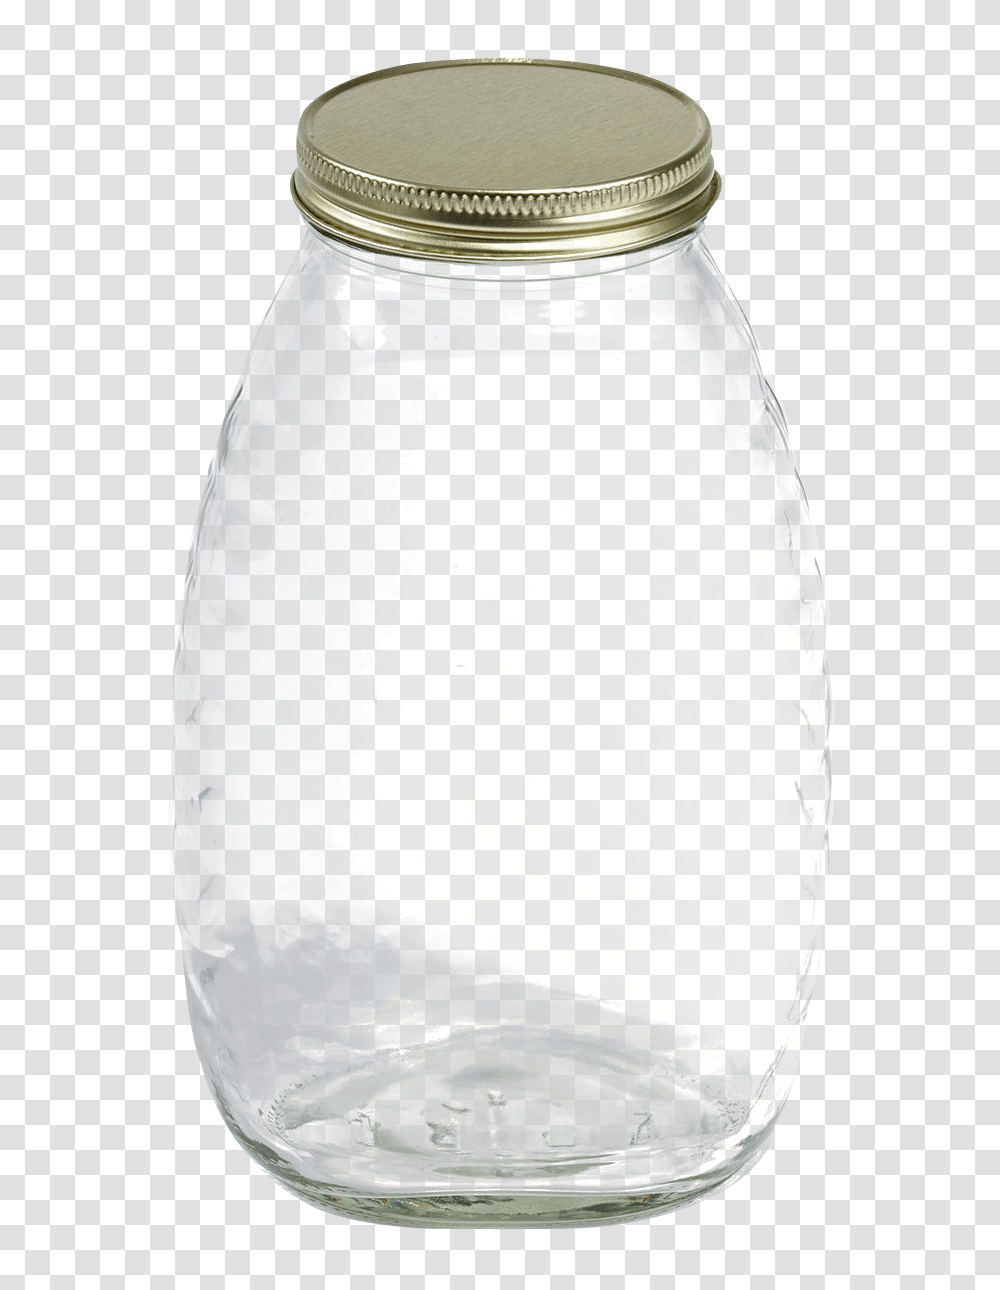 Glass Jar Image, Shaker, Bottle, Milk, Beverage Transparent Png